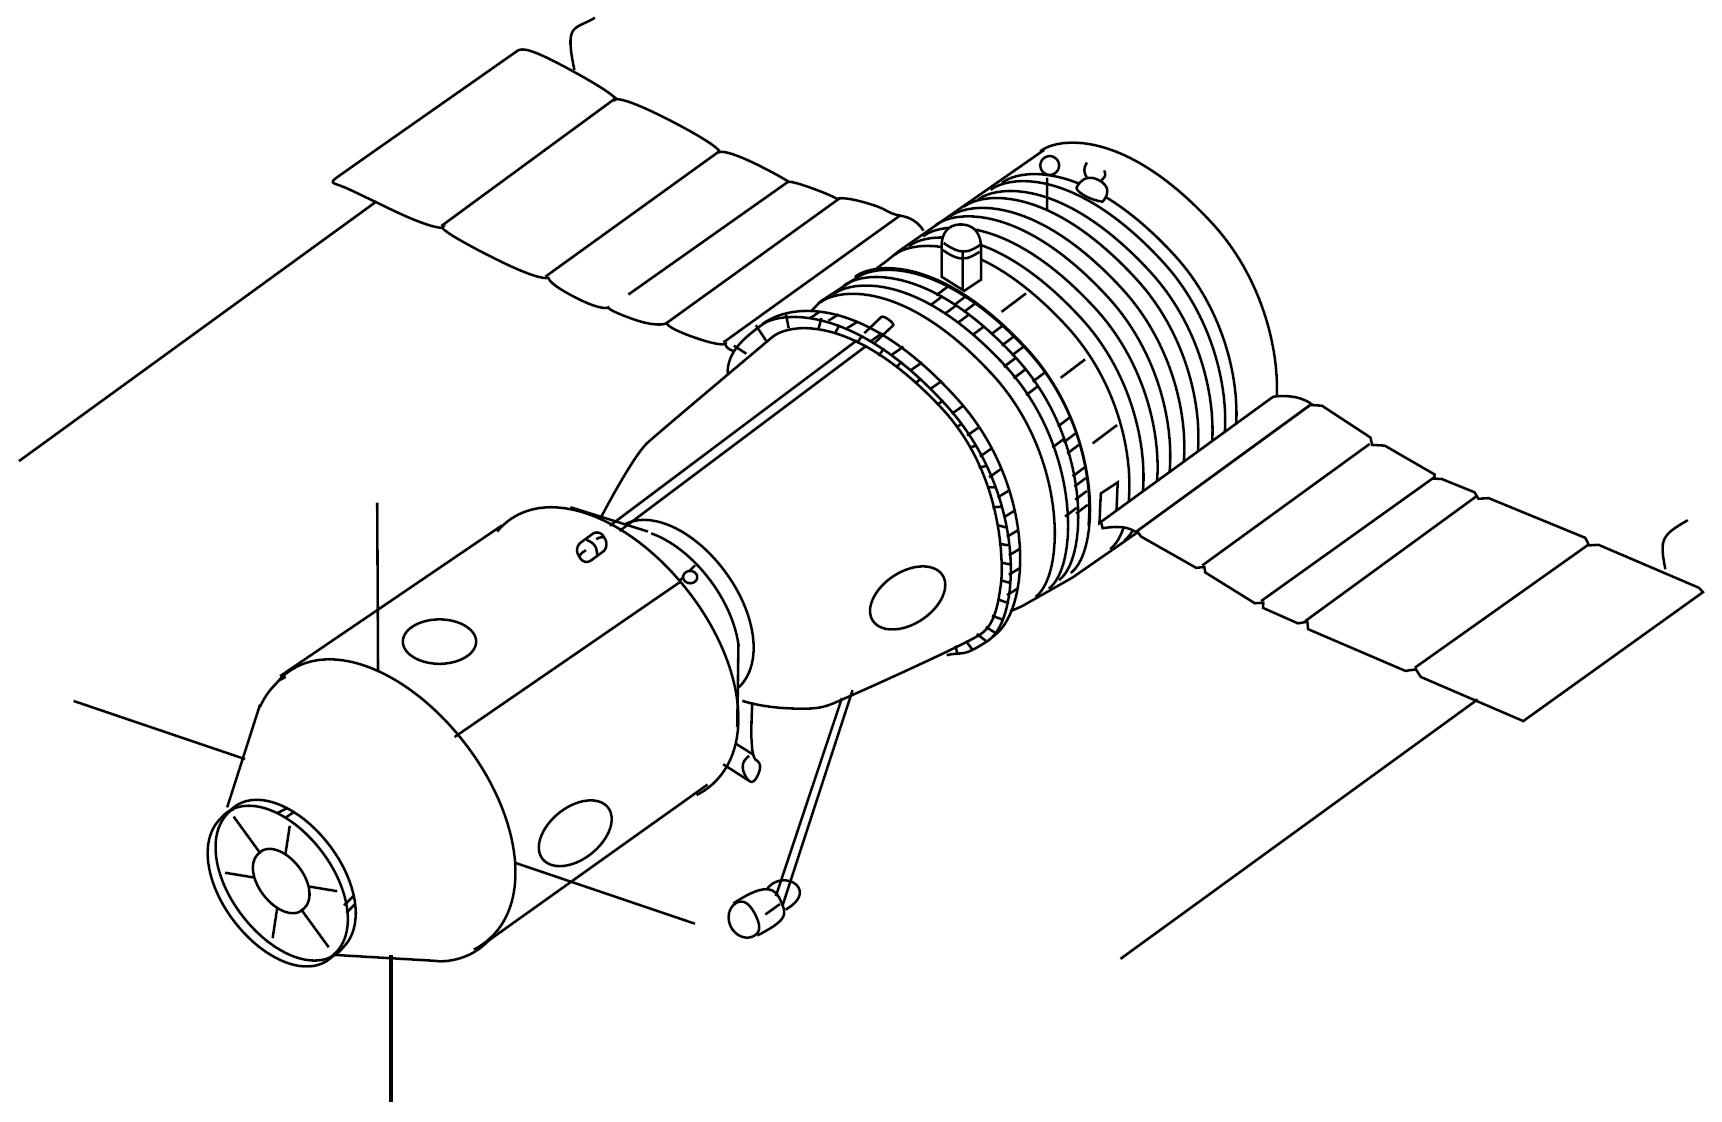 Спутник рисунок для детей. Космический корабль Союз «Союз» 7к-ок. МКС вид сбоку чертеж. Летательные межконтинентальные космические аппараты. Космический аппарат Союз чертеж.